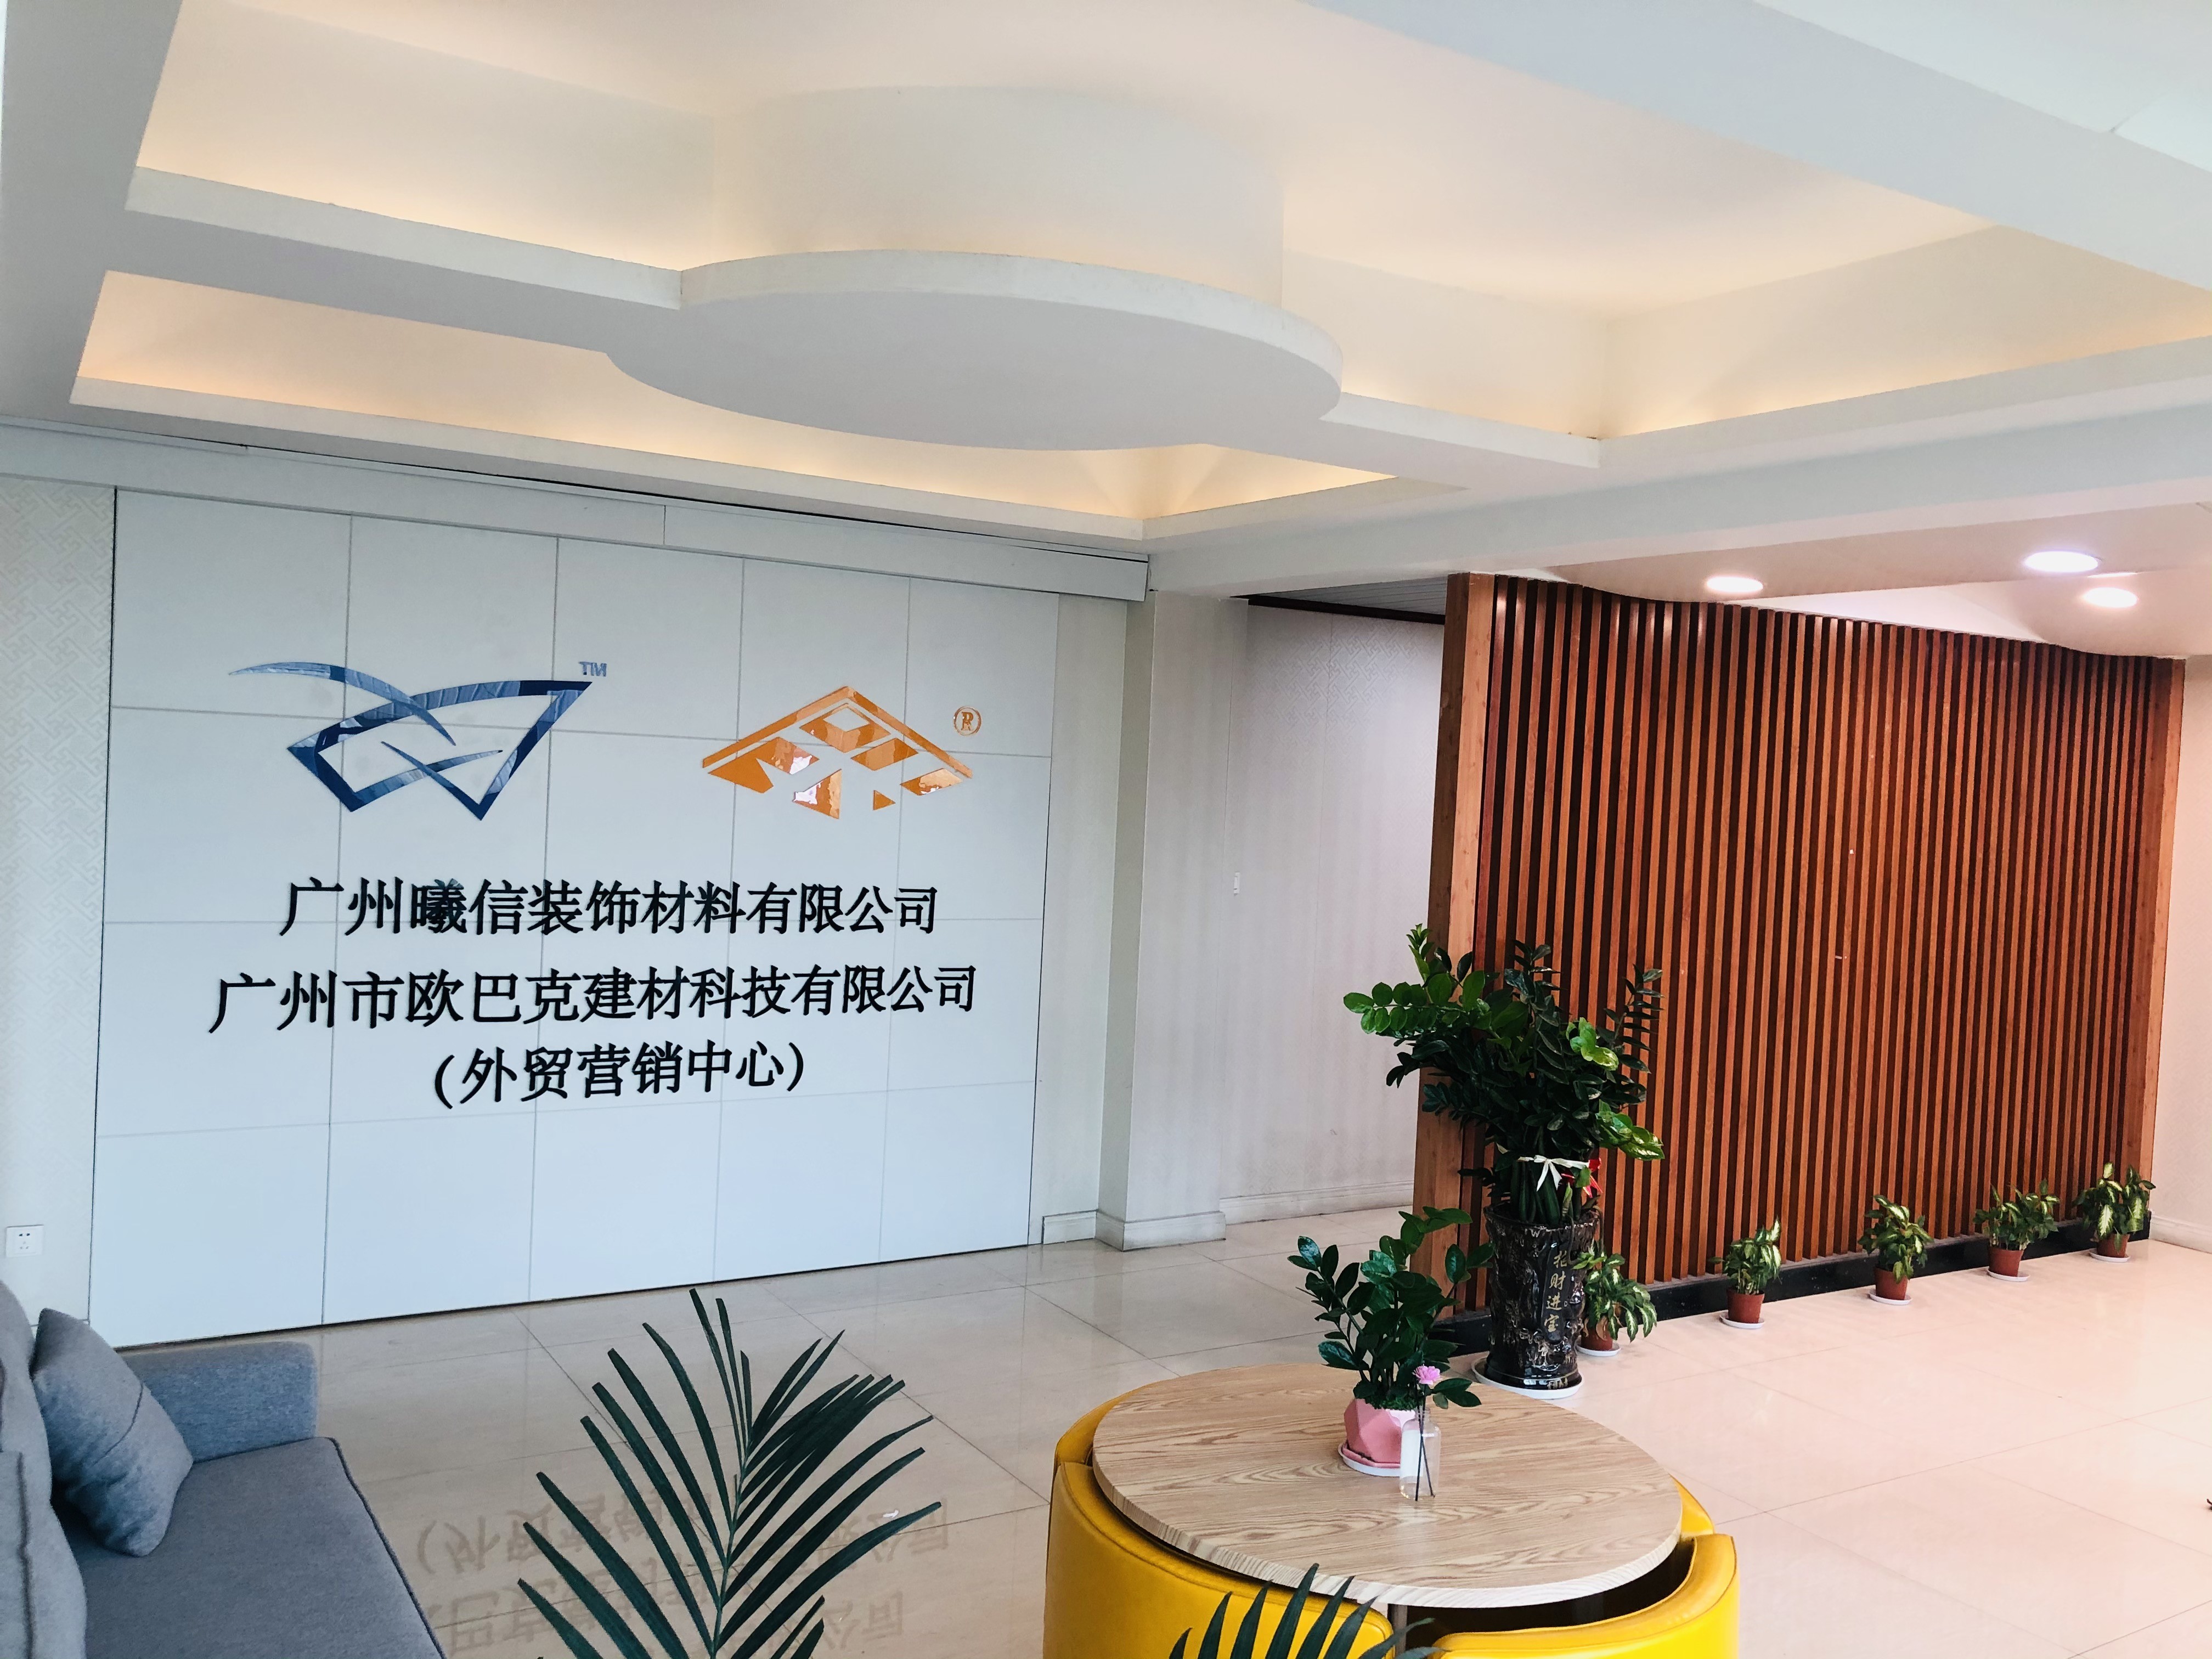 ประเทศจีน Guangzhou Season Decoration Materials Co., Ltd.